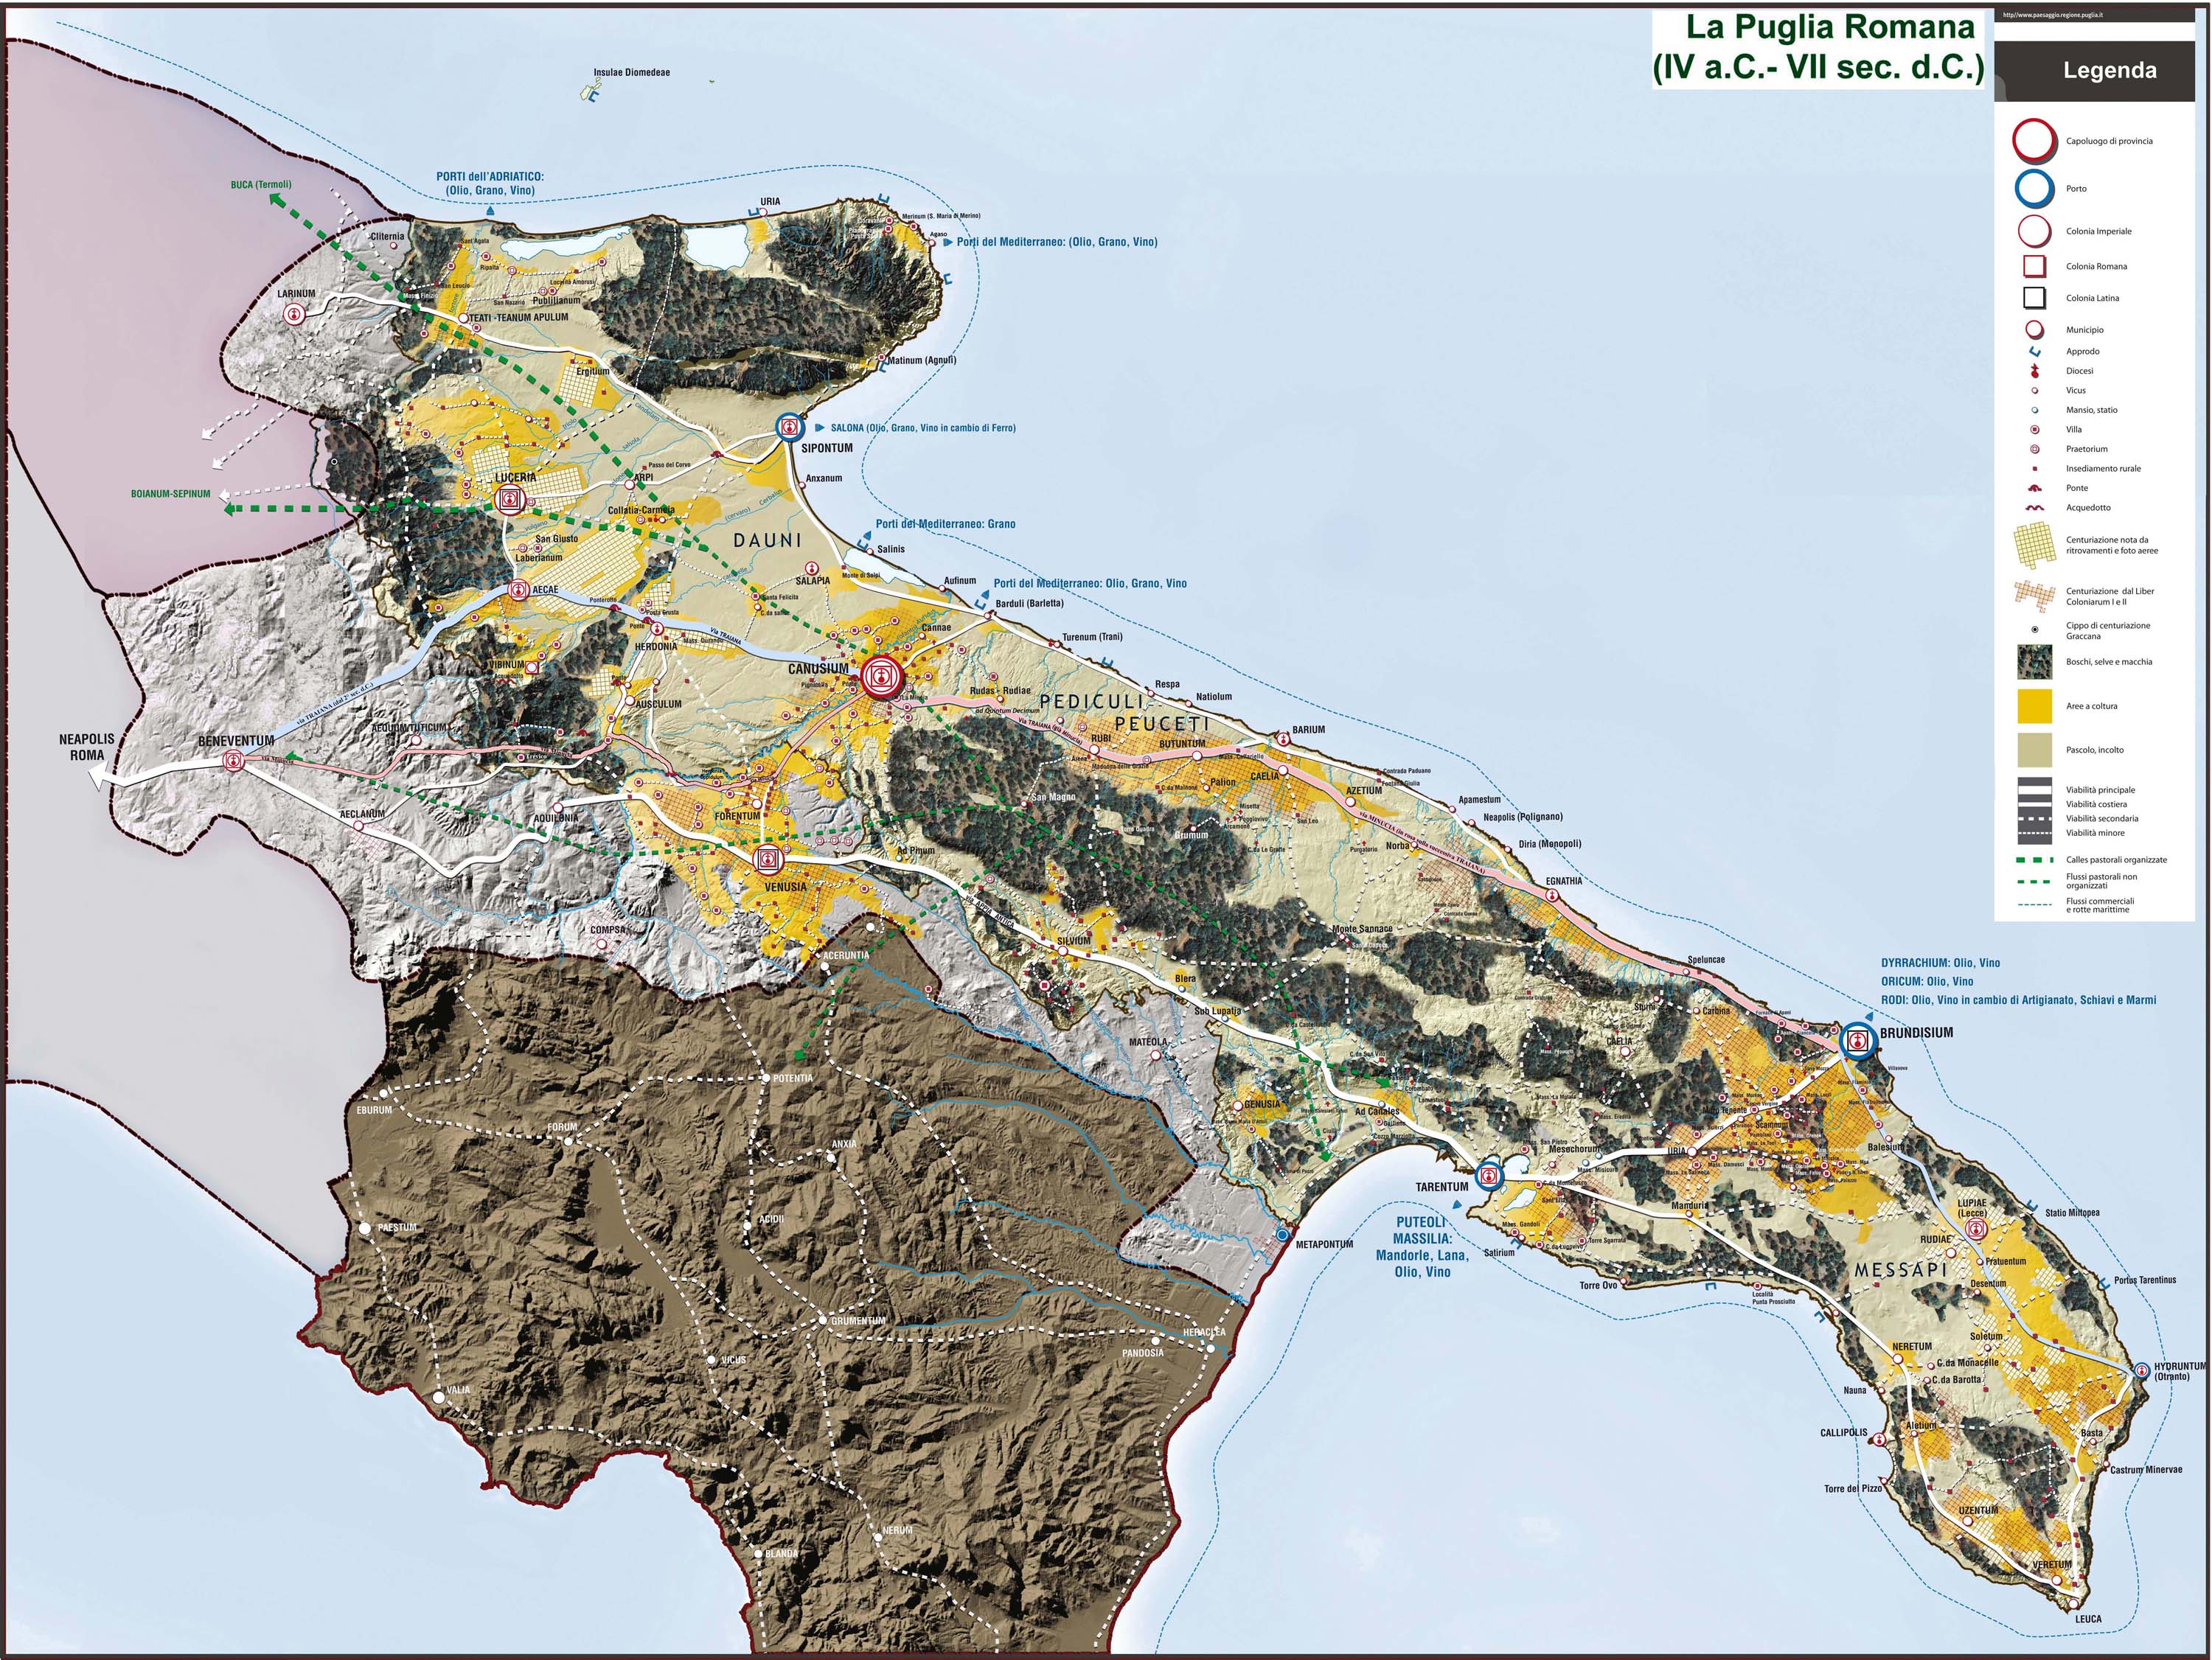 La Puglia Romana dal IV sec. a.C. al VII sec. d.C.